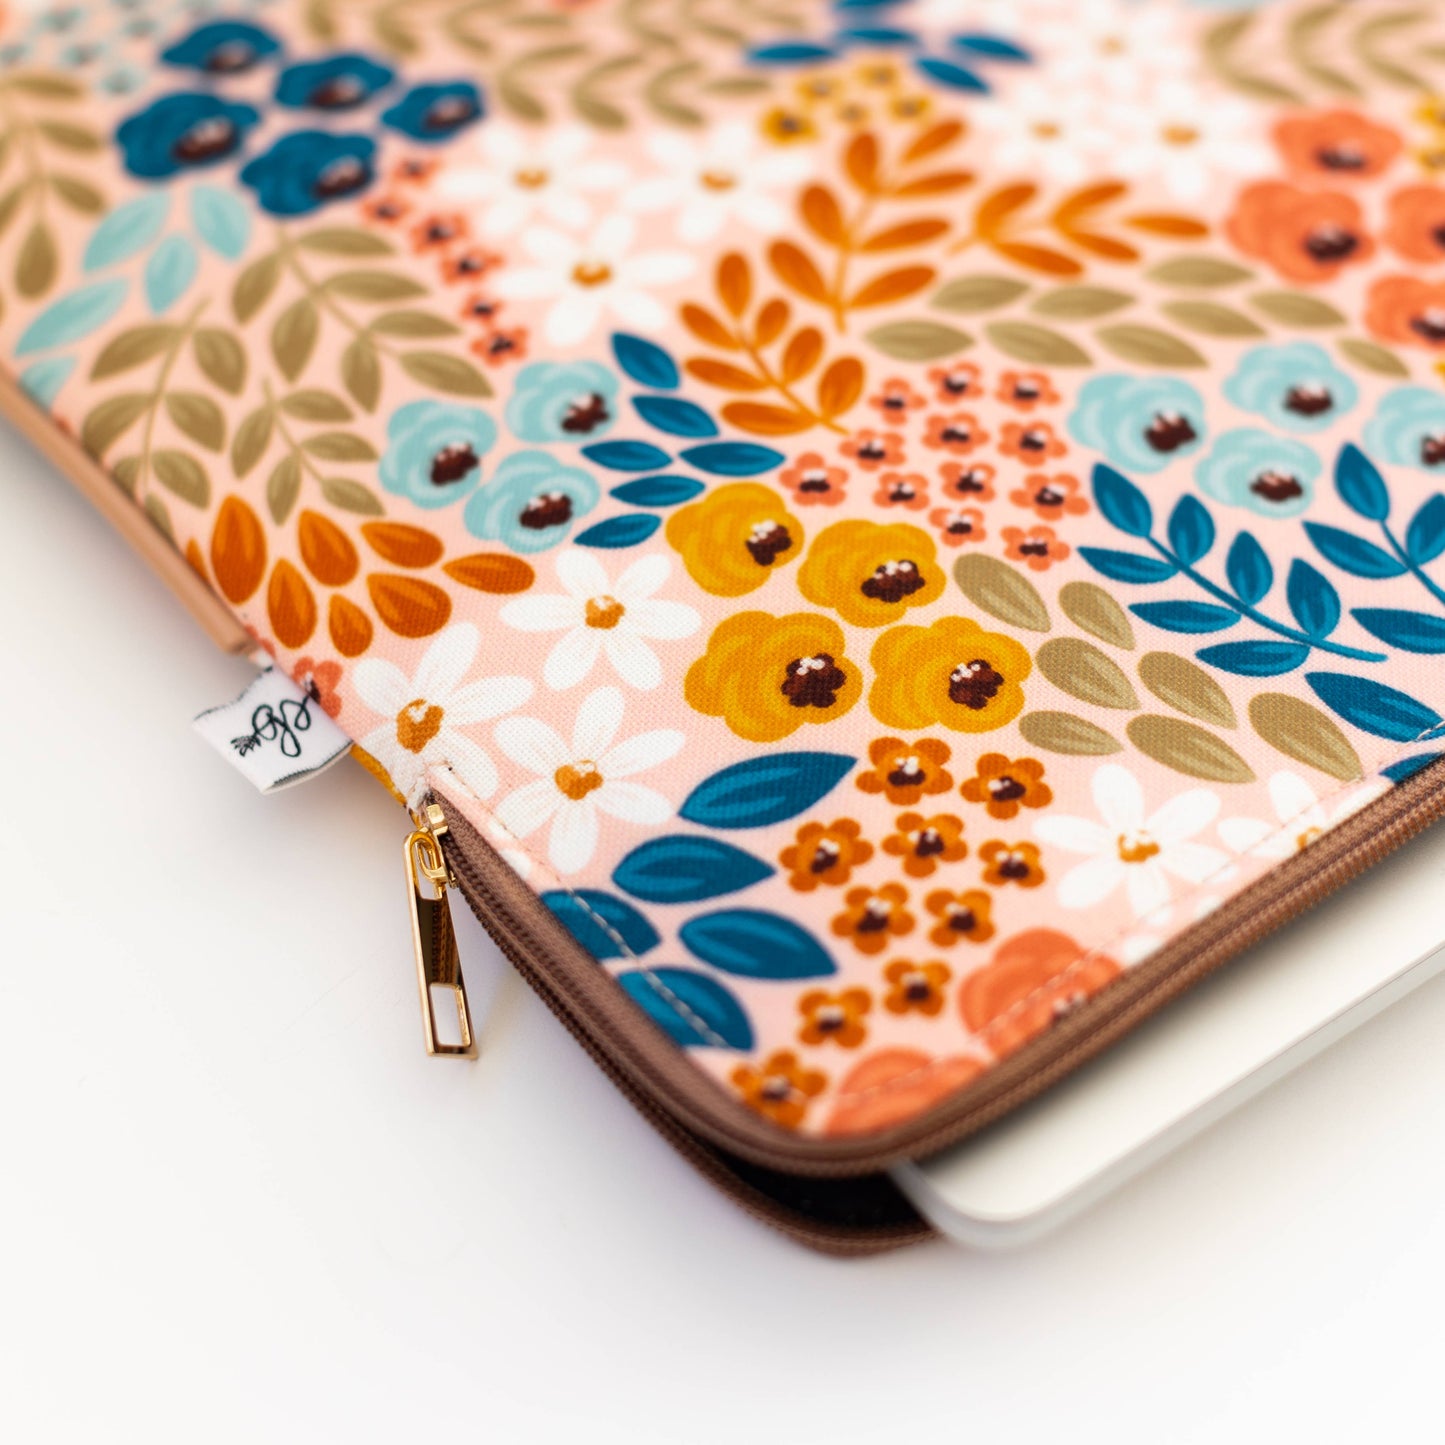 Honeysuckle Floral Laptop Sleeve: 15" Spring-Summer Elyse Breanne Design